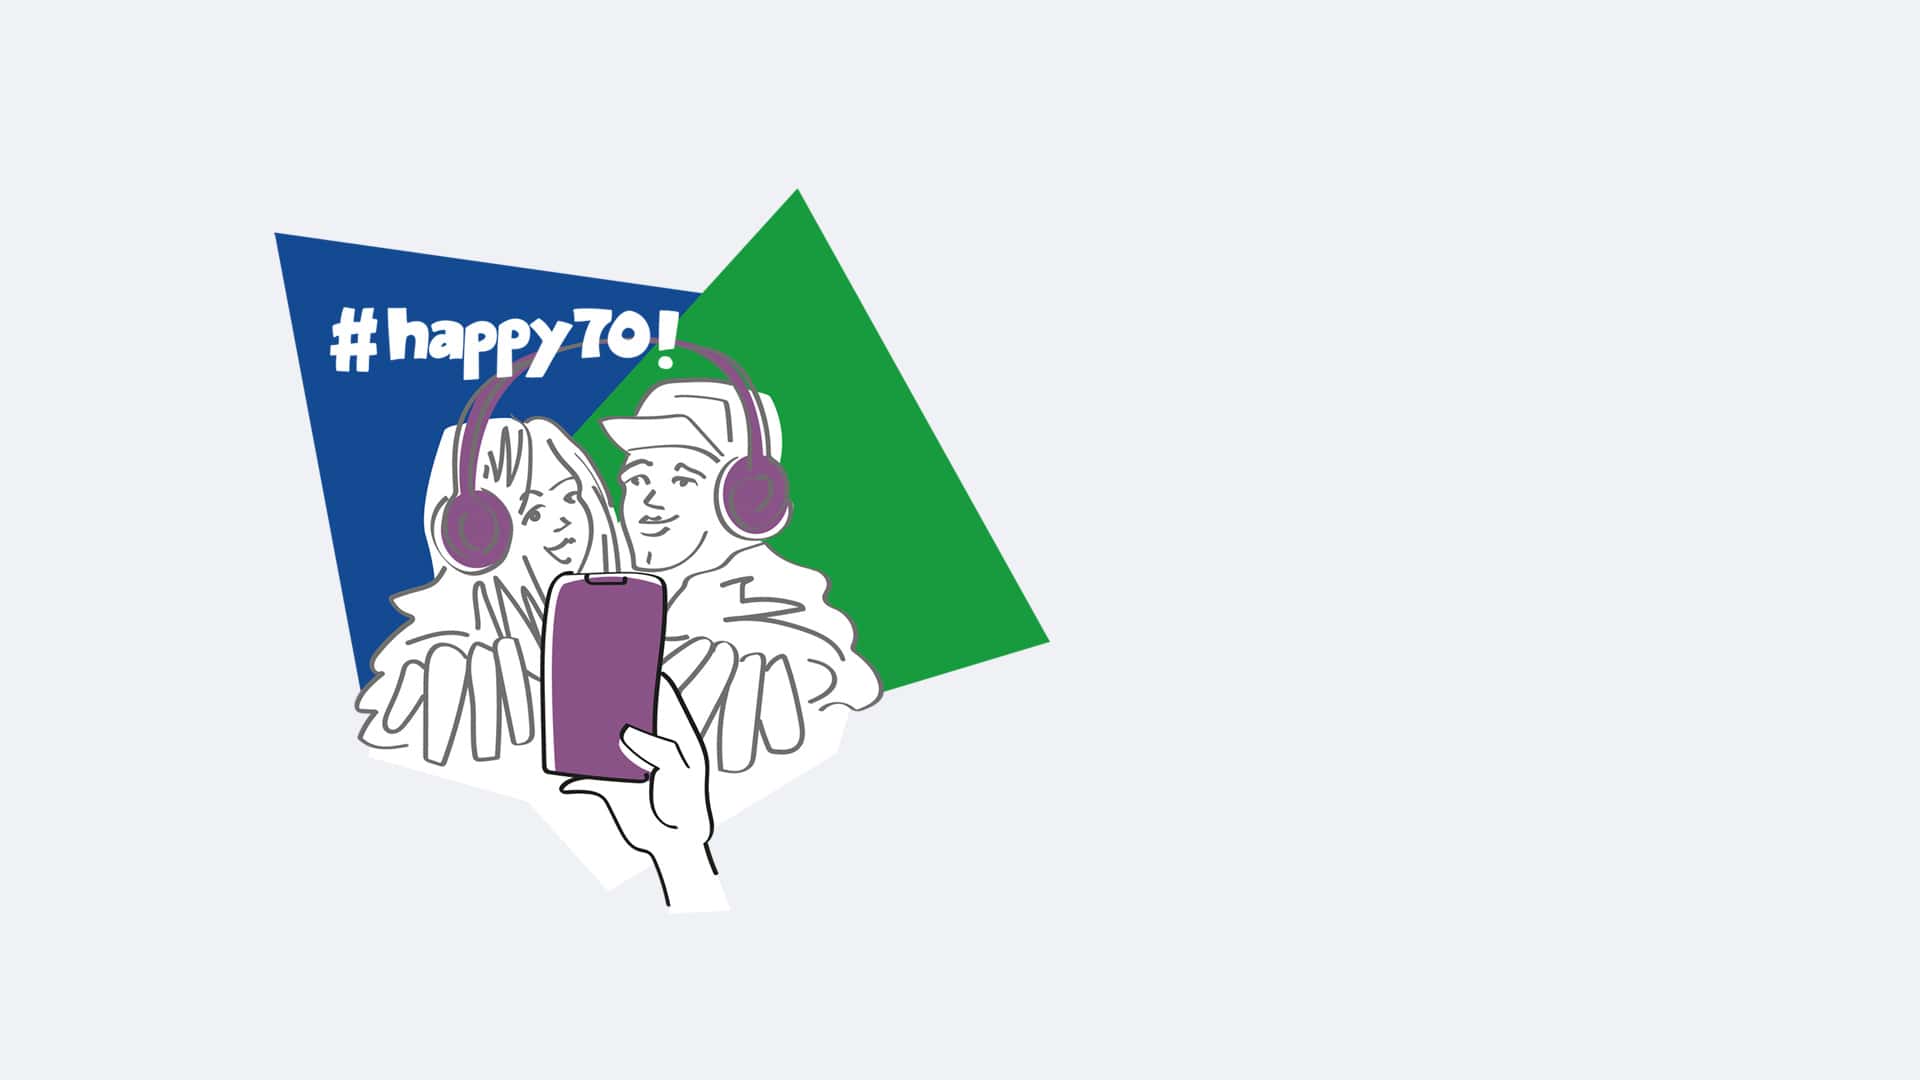 Glückwunsch: #happy70 Ausbildung in der Versicherung Gewinner:innen stehen fest